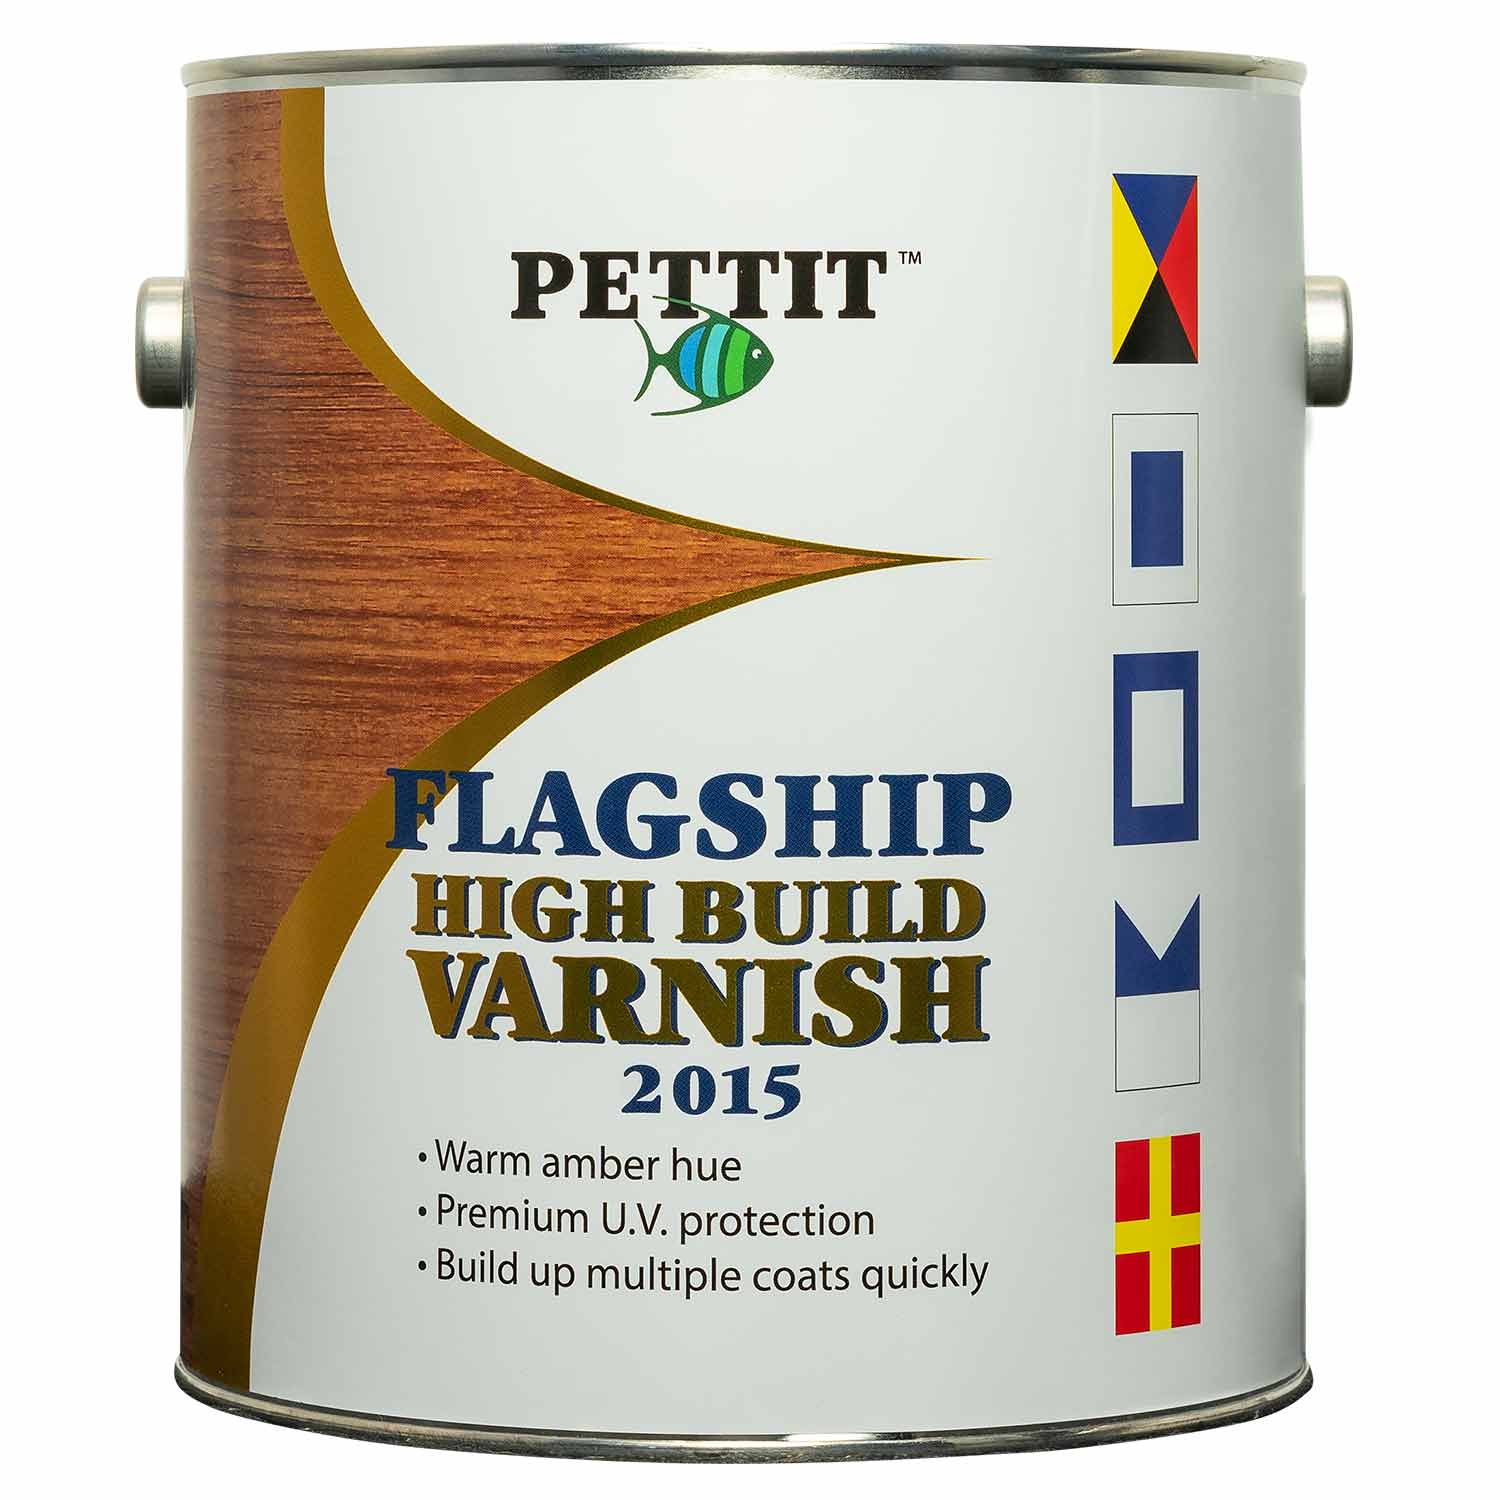 PETTIT PAINT Flagship Varnish 2015